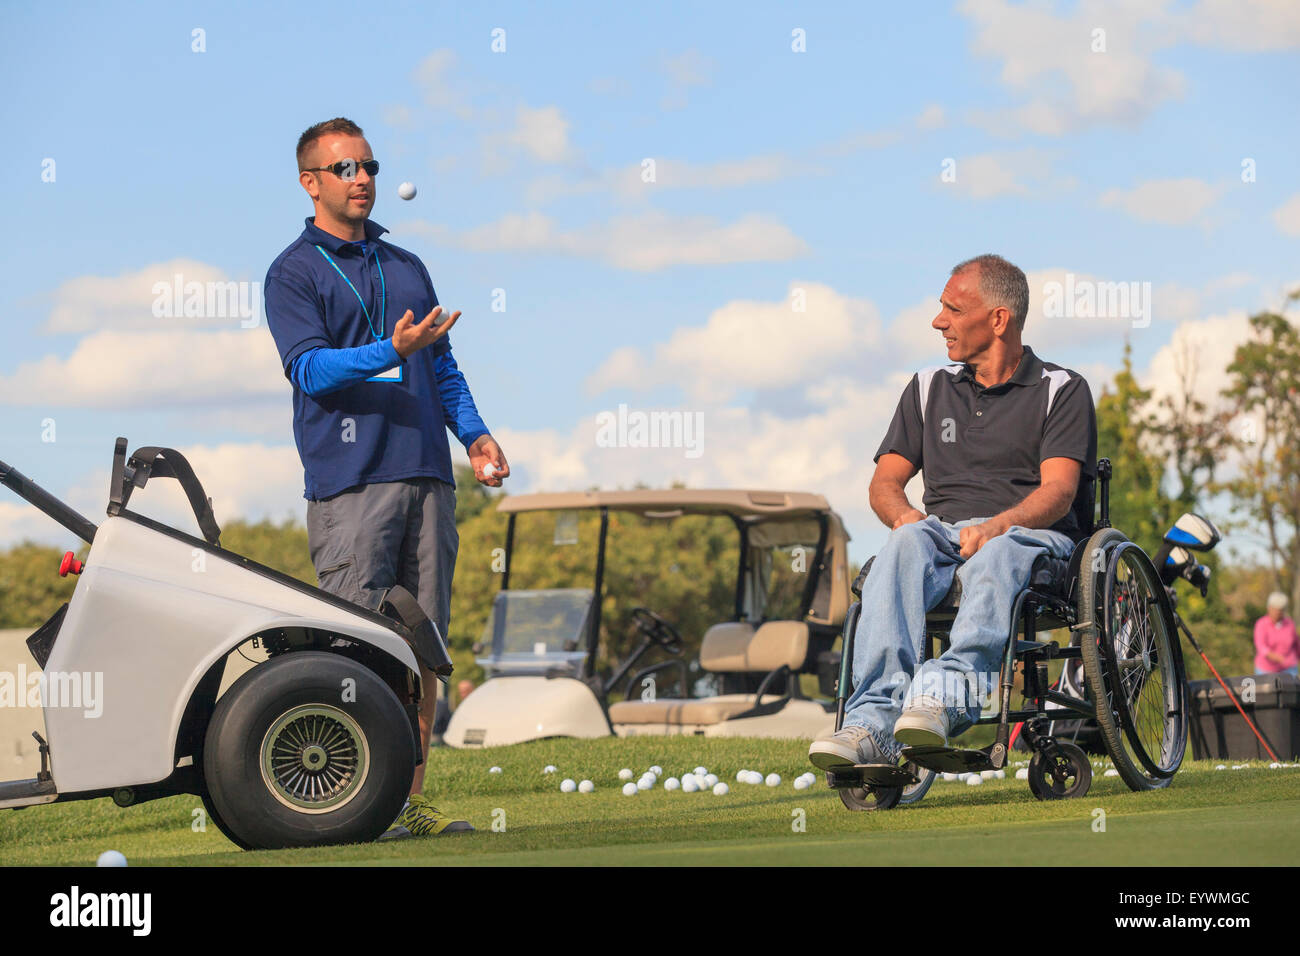 Mann mit einer Rückenmarksverletzung in eine adaptive Warenkorb zusammen mit seinem Assistenten Golf spielen Stockfoto